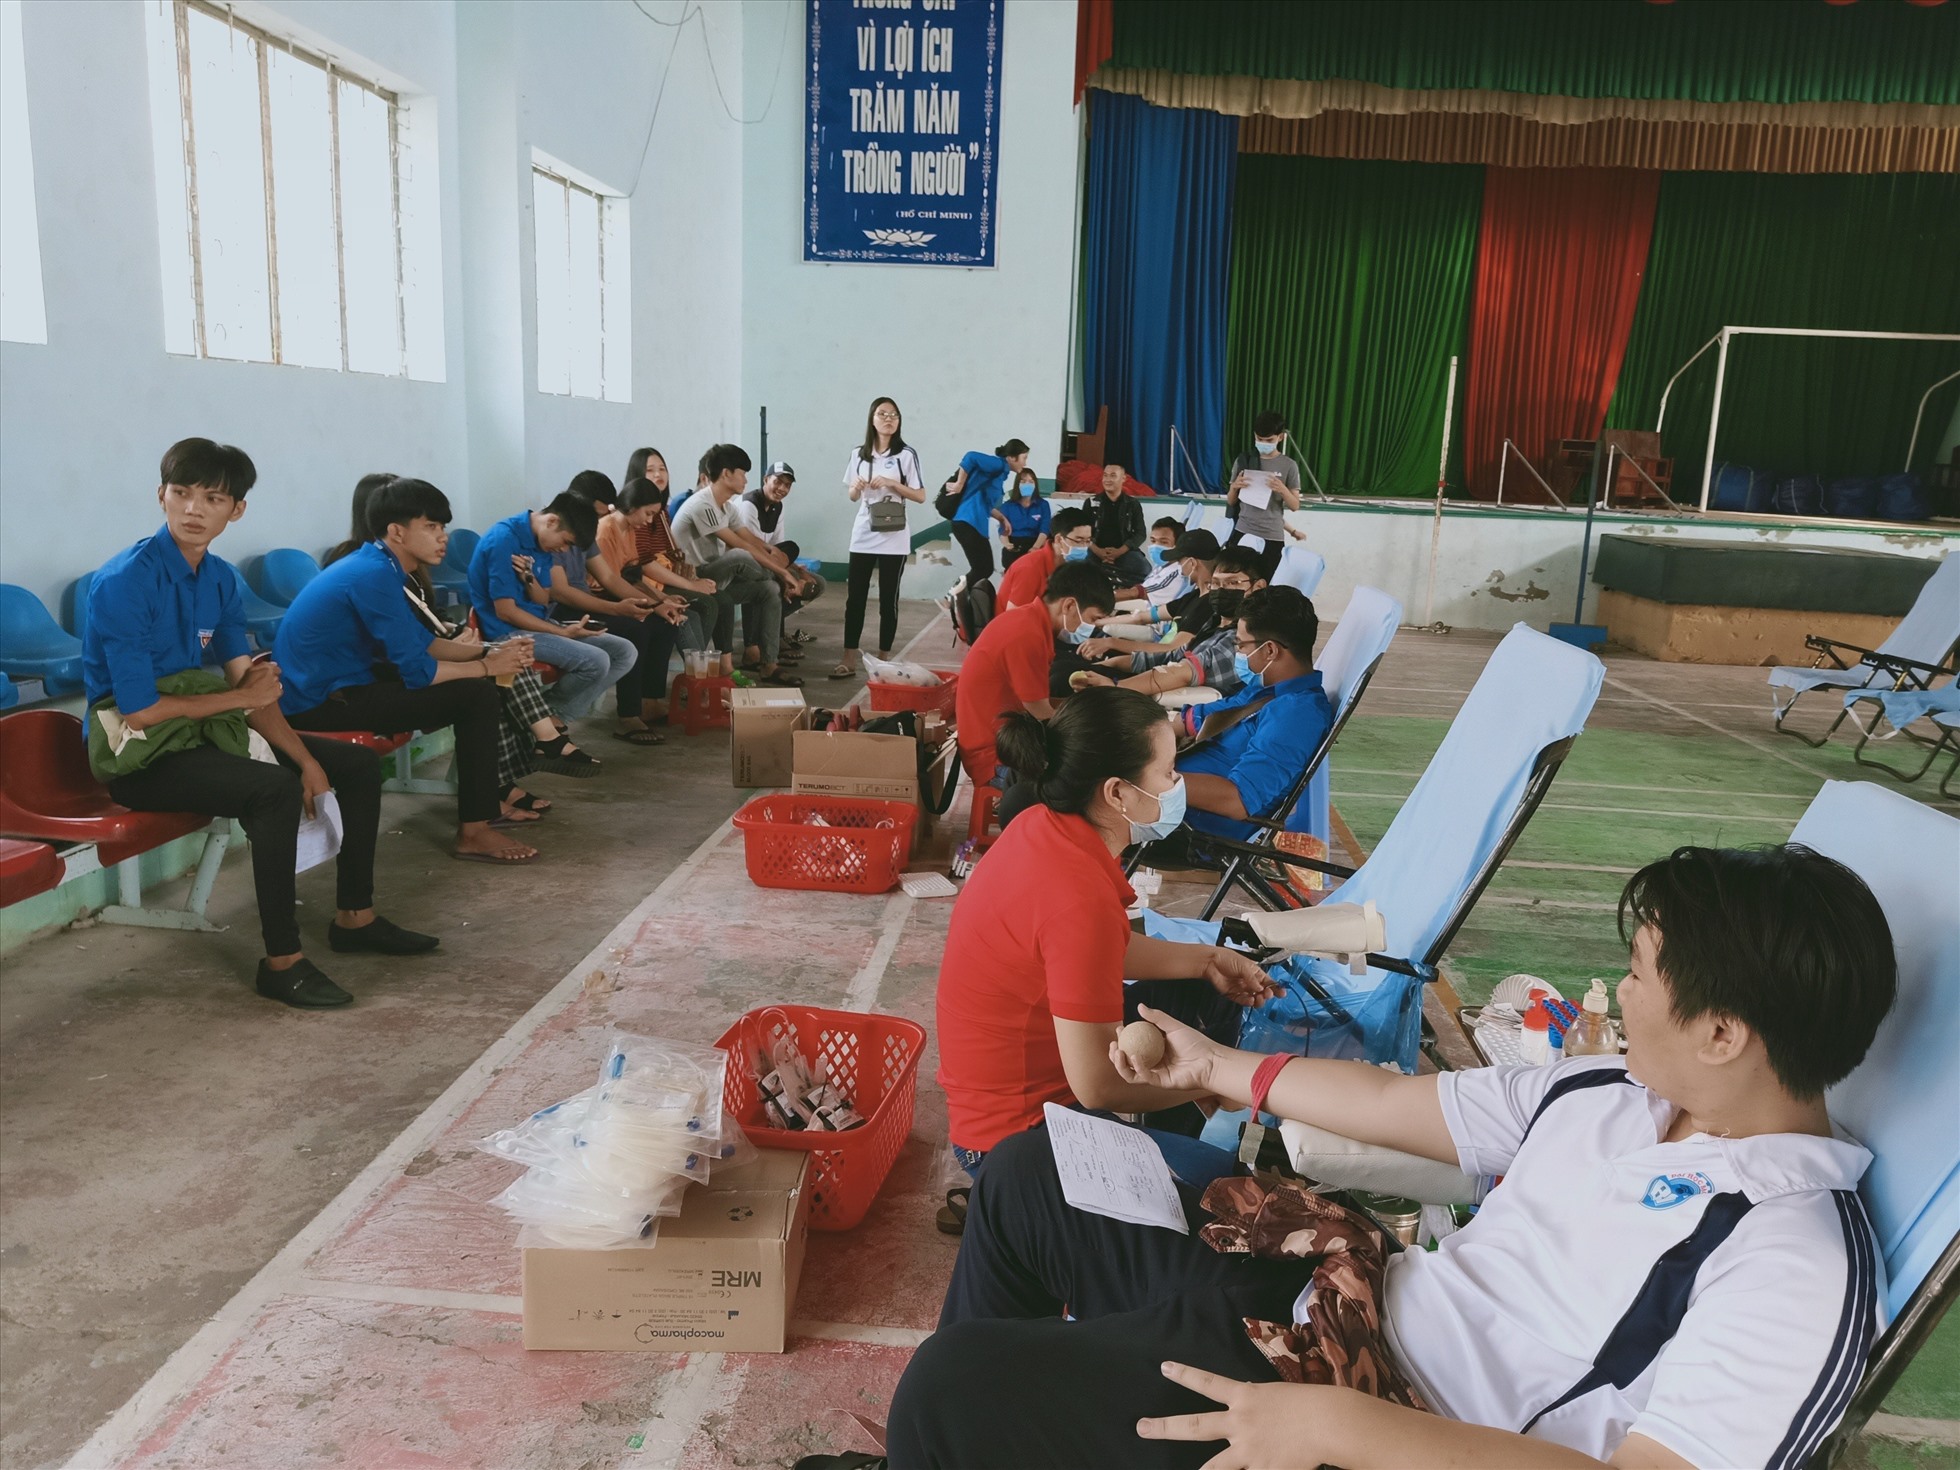 Hoạt động hiến máu tình nguyện được tỉnh Bạc Liêu hoạt động thường xuyên, liên tục nhằm cung cấp cho ngân hàng máu. Ảnh: Nhật Hồ